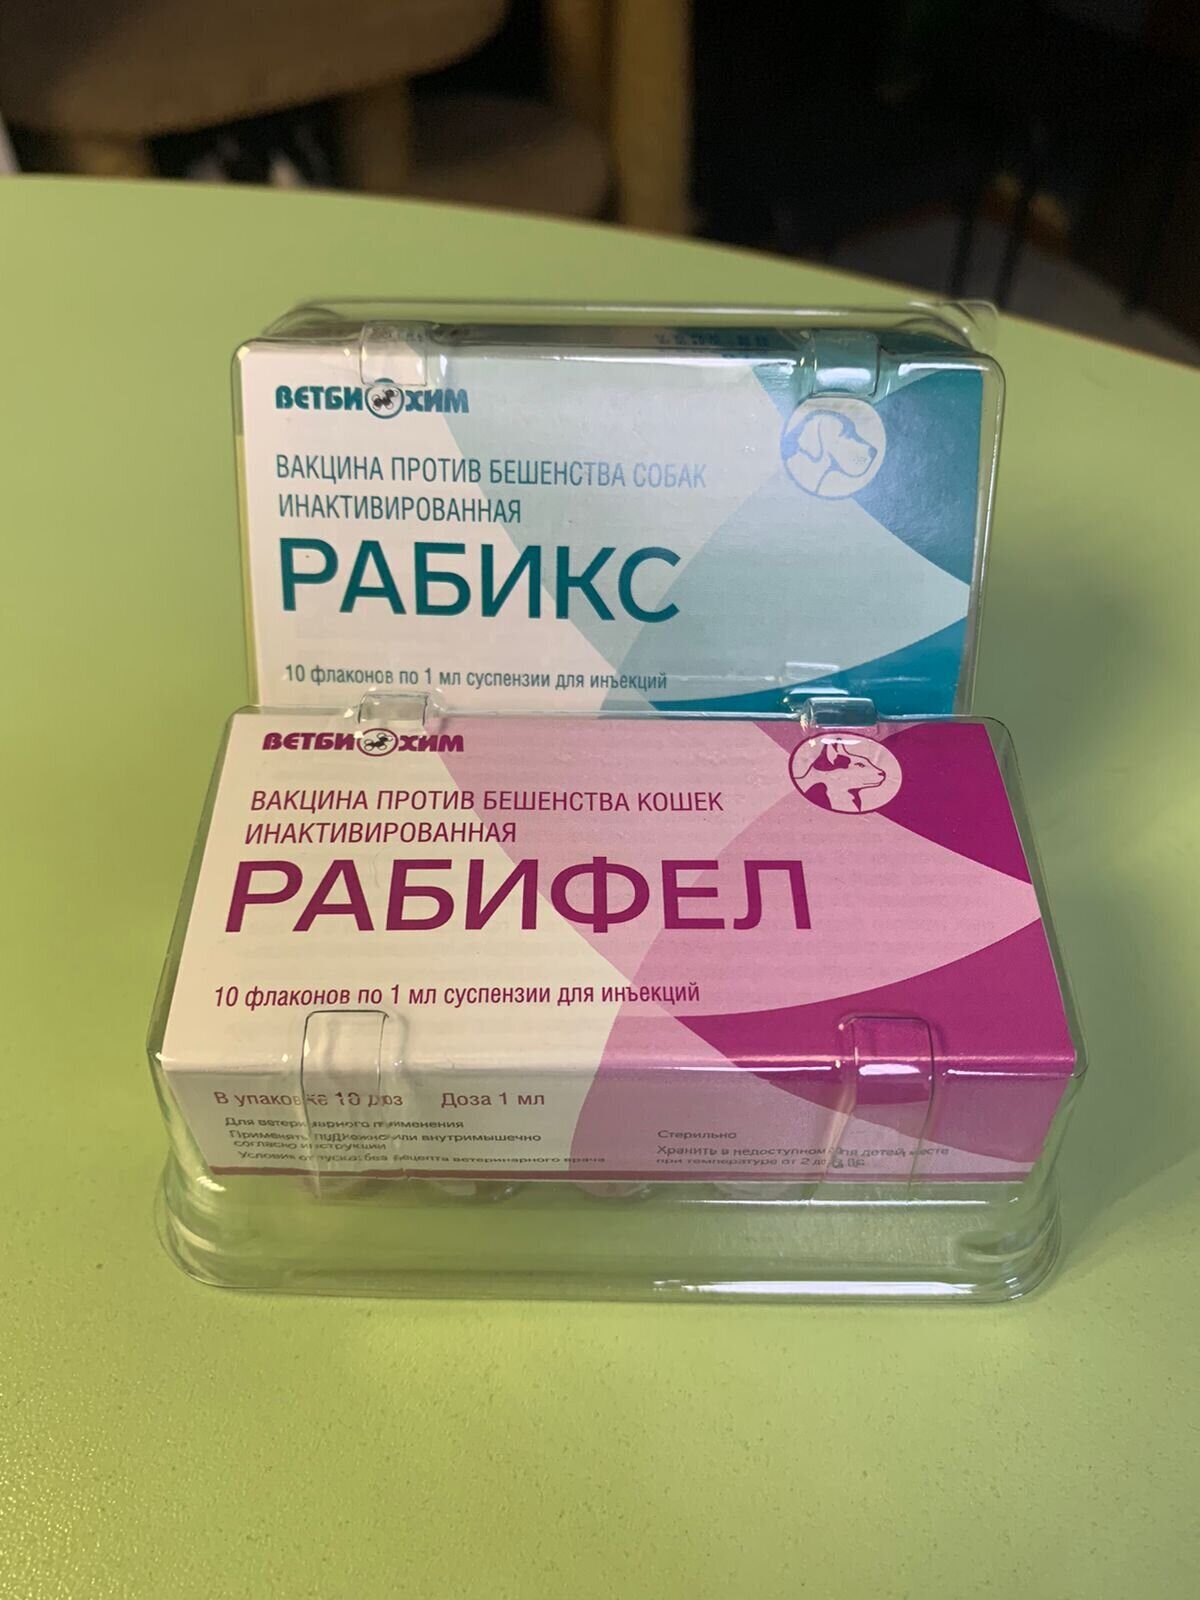 В наличии вакцины от БЕШЕНСТВА
Рабикс и Рабифел (Россия)